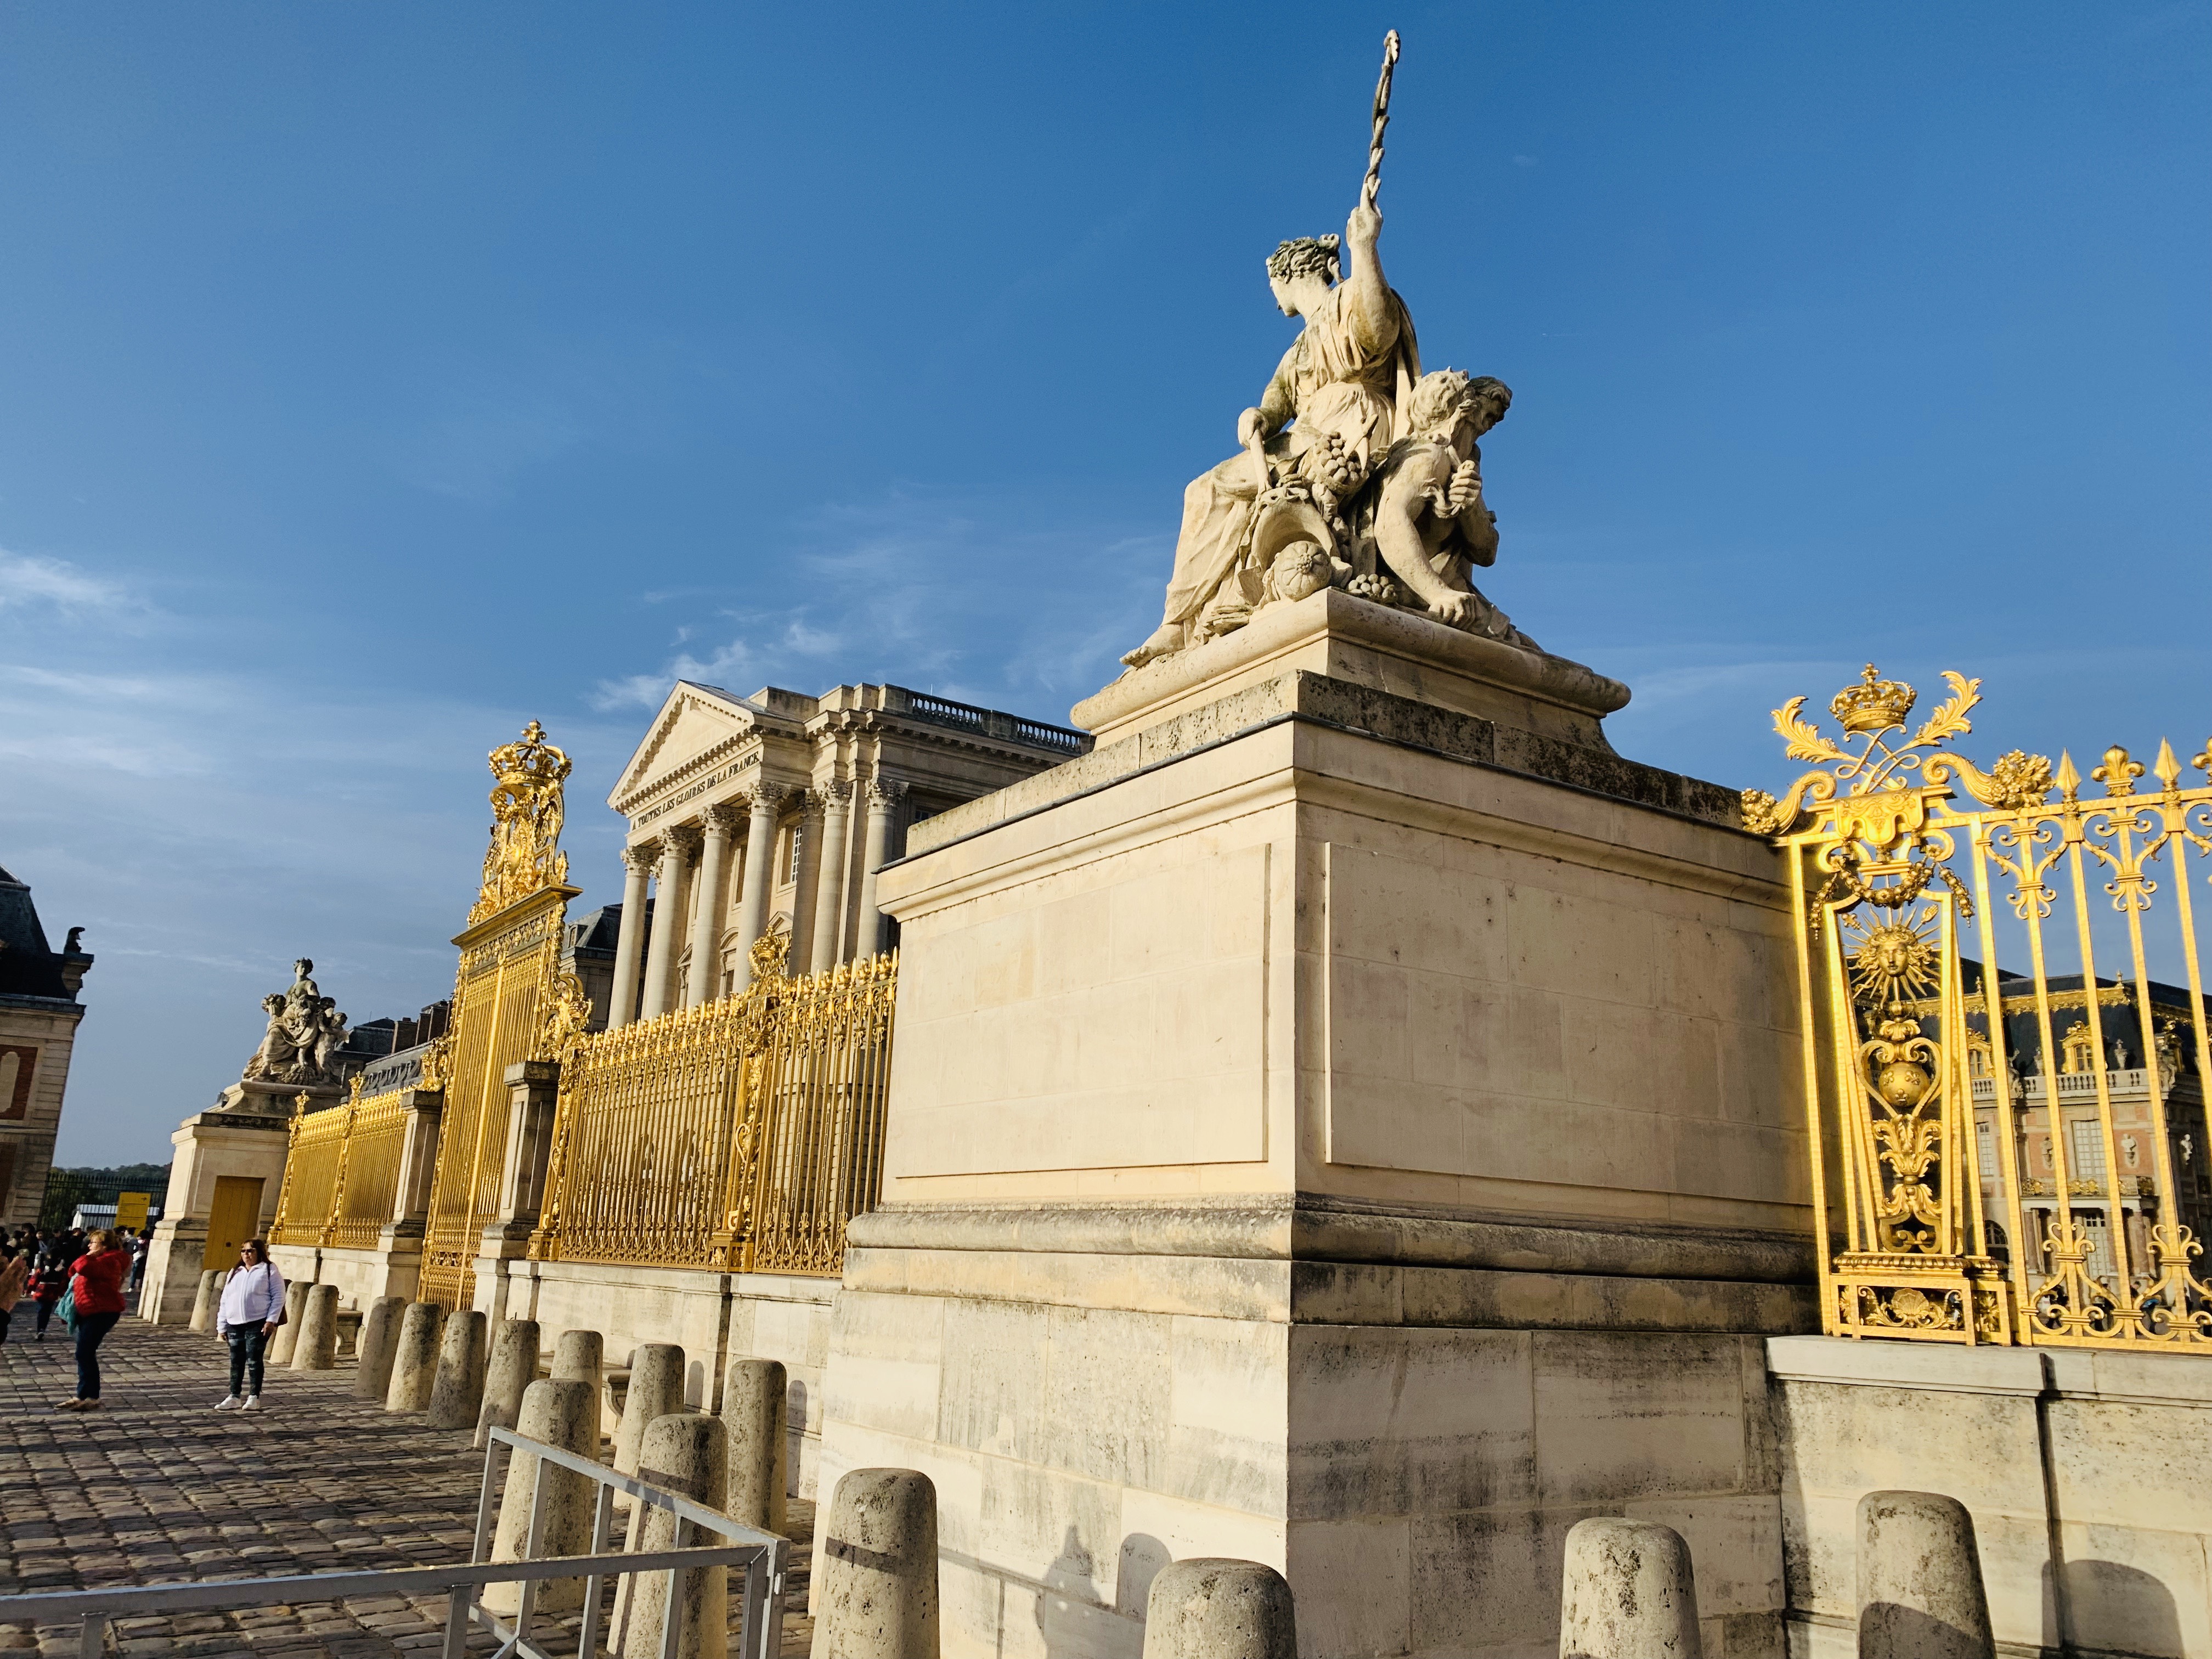 凡尔赛宫图片高清外景图片